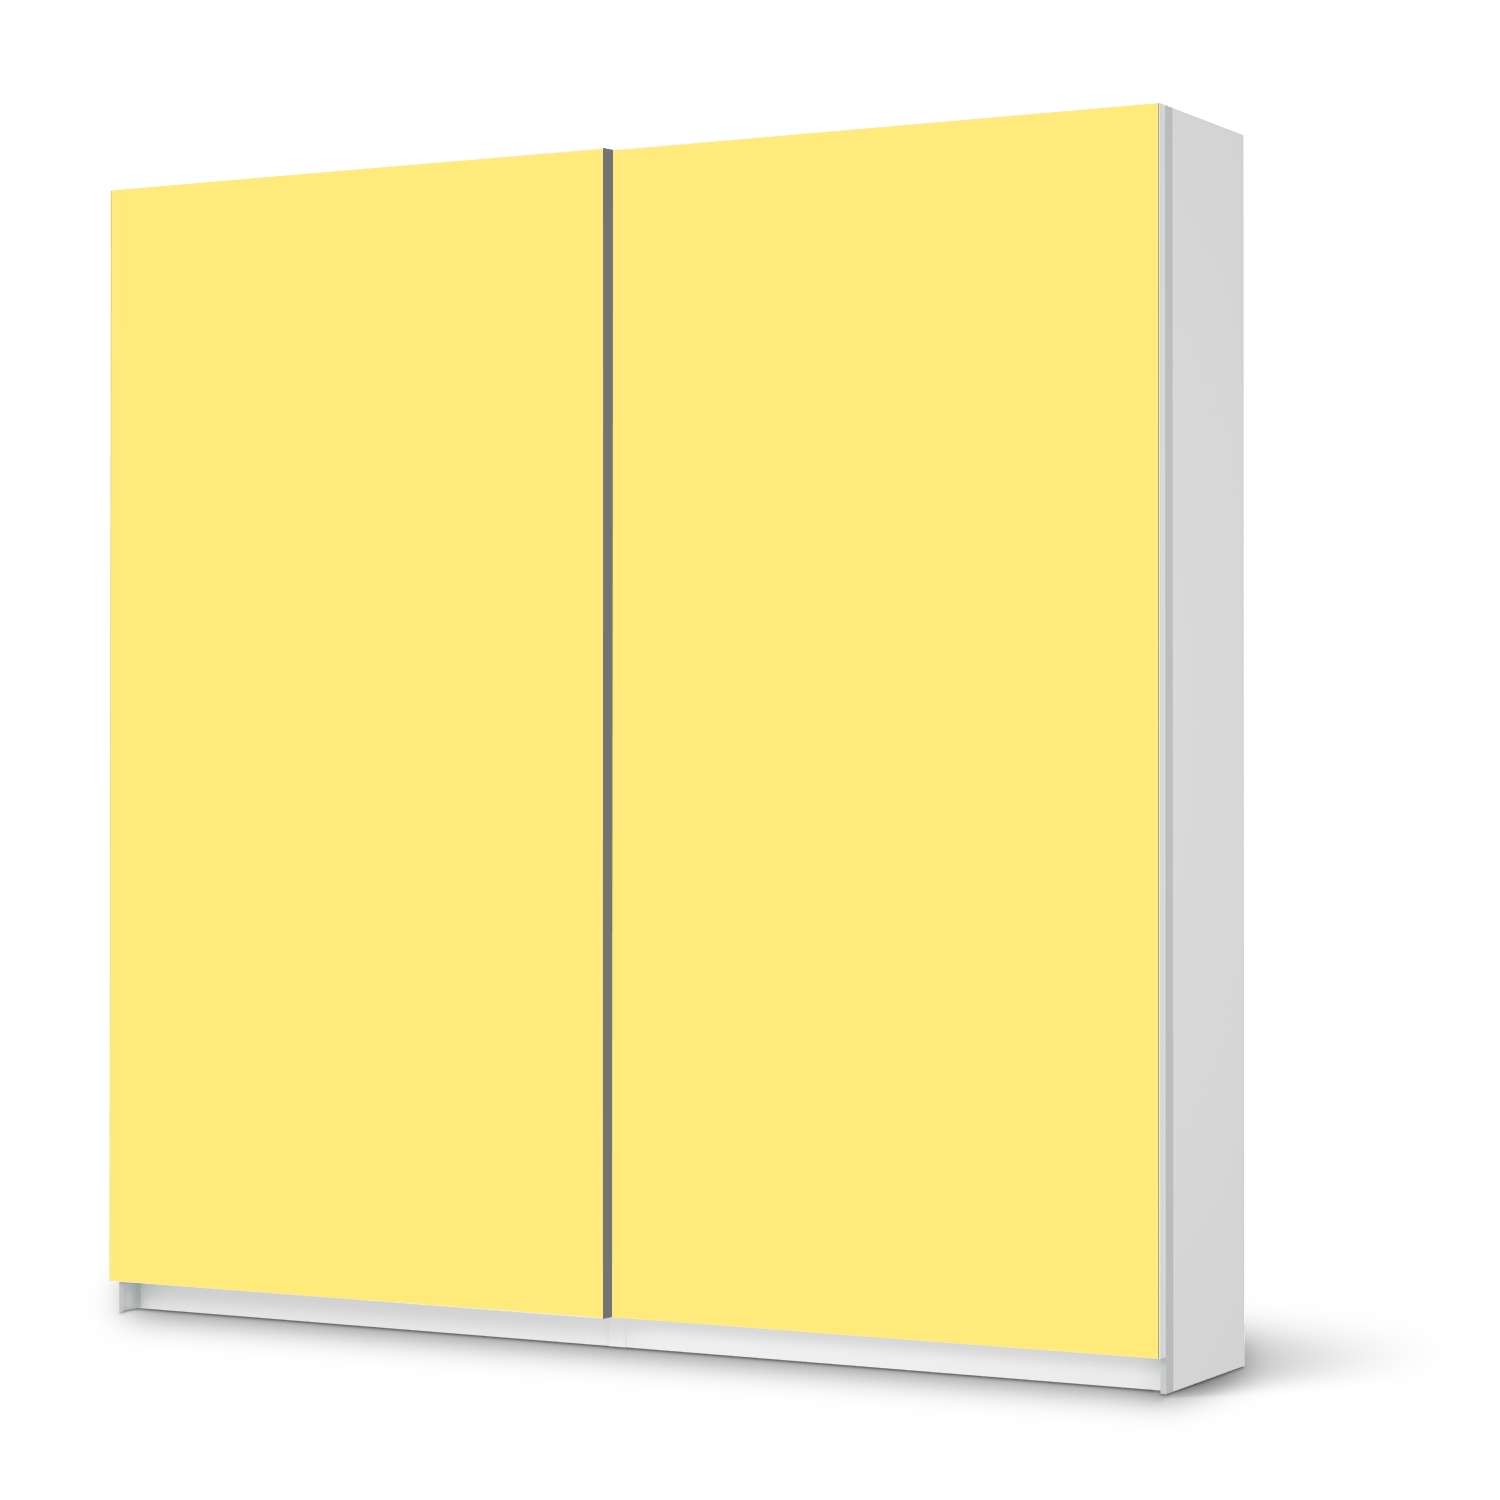 M?bel Klebefolie IKEA Pax Schrank 201 cm H?he - Schiebet?r - Design: Gelb Light von creatisto